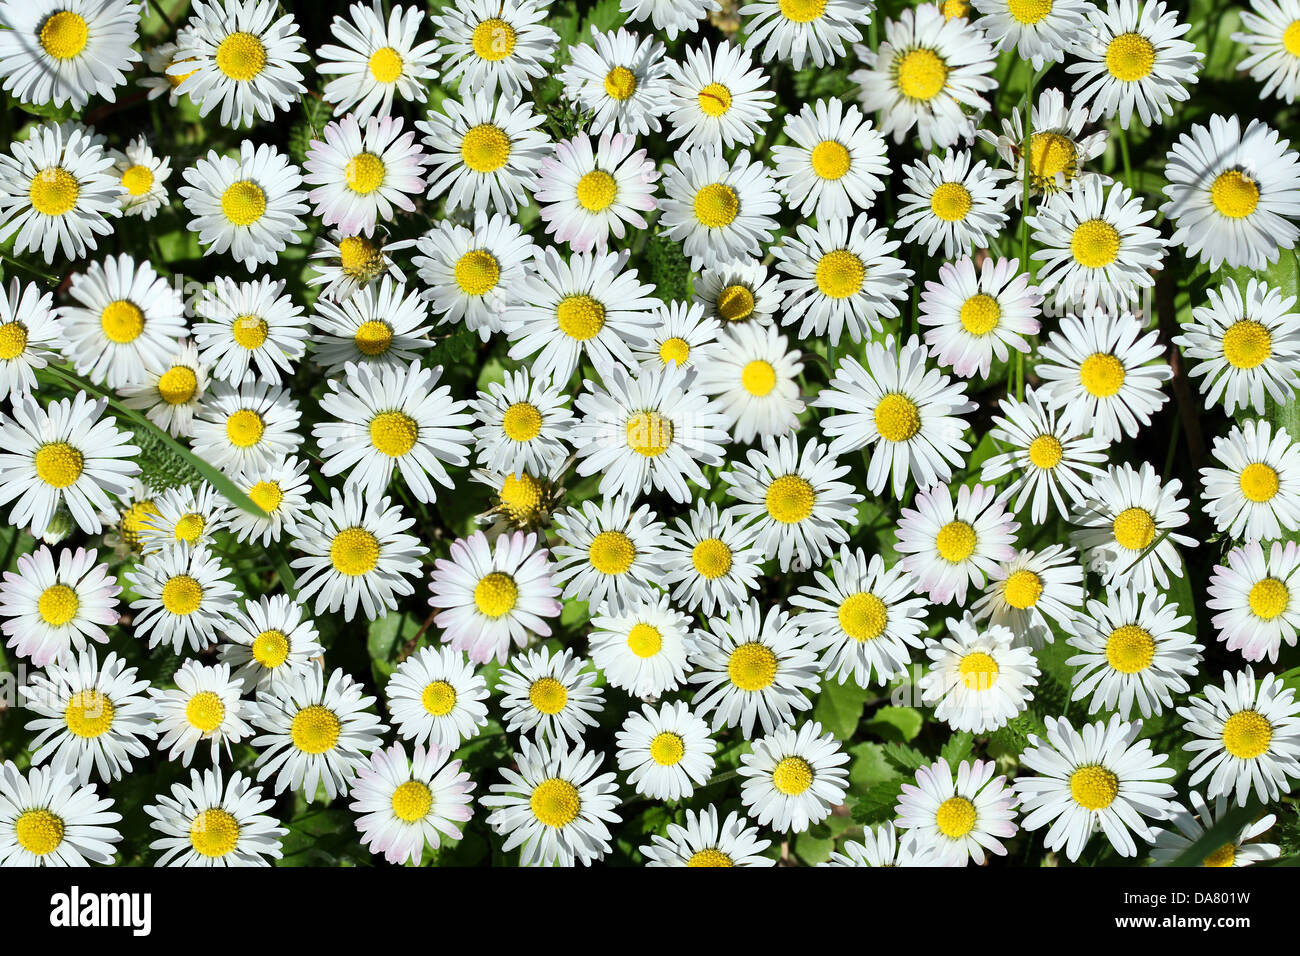 Hintergrund von White Daisy Blume, Closeup, erschossen. Stockfoto